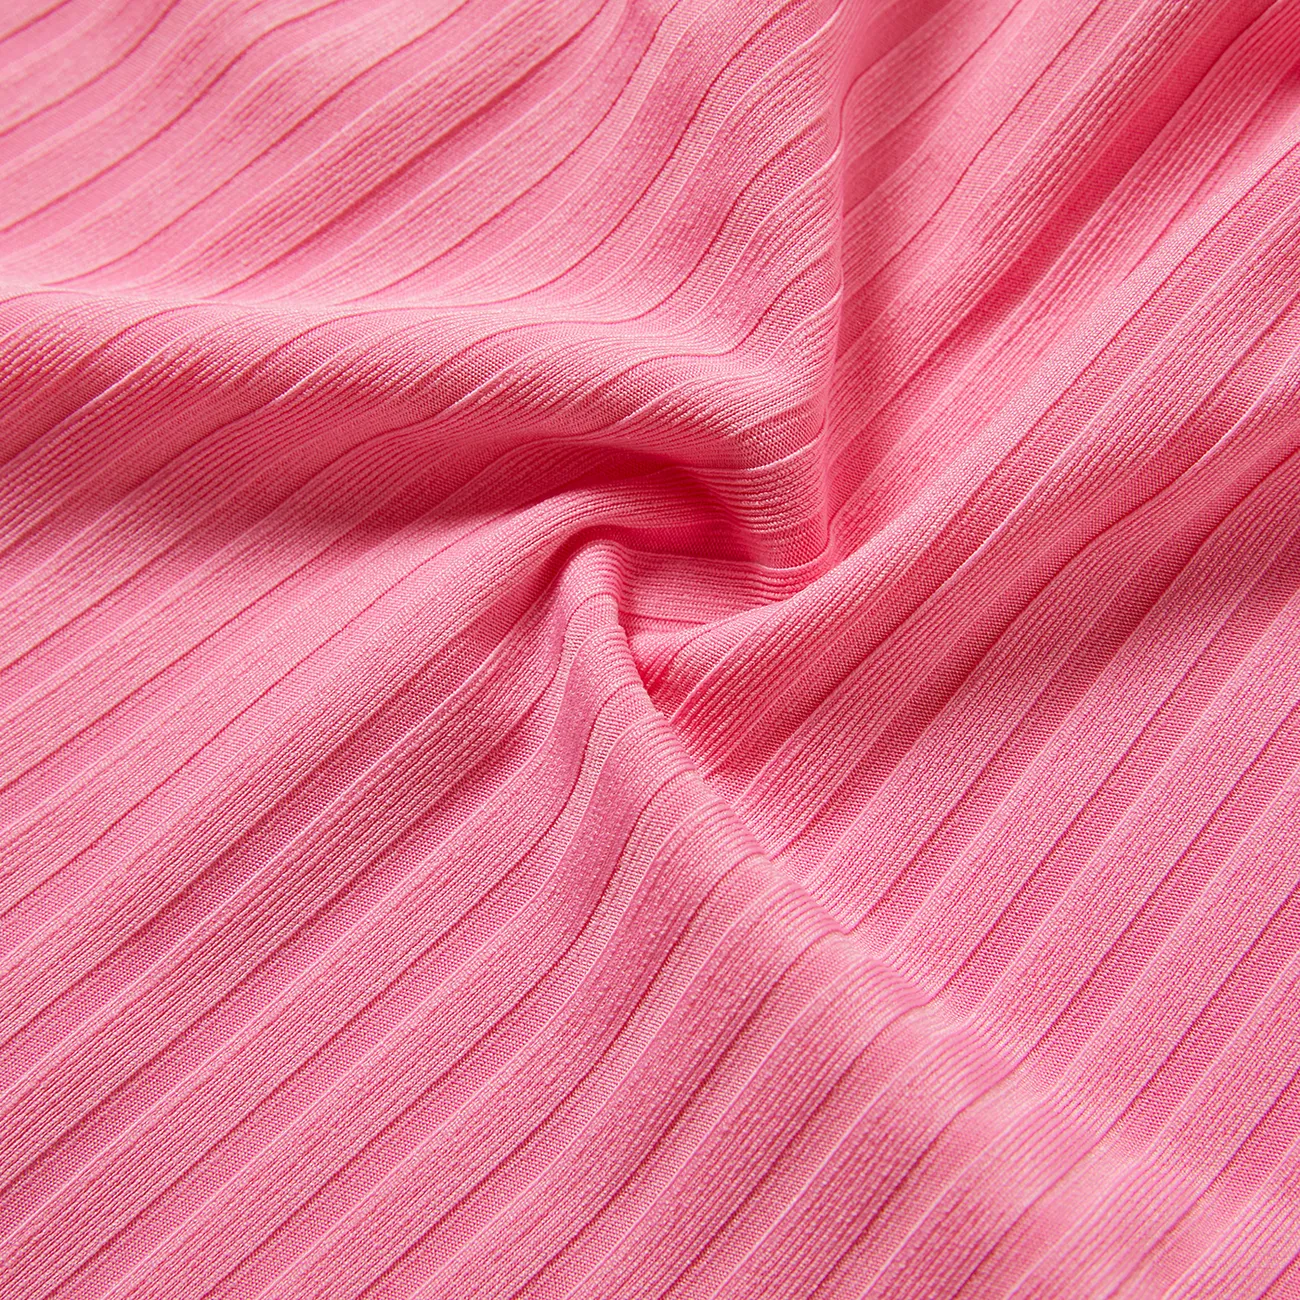 Baby Mädchen Schulterfrei Süß Langärmelig Baby-Overalls rosa big image 1